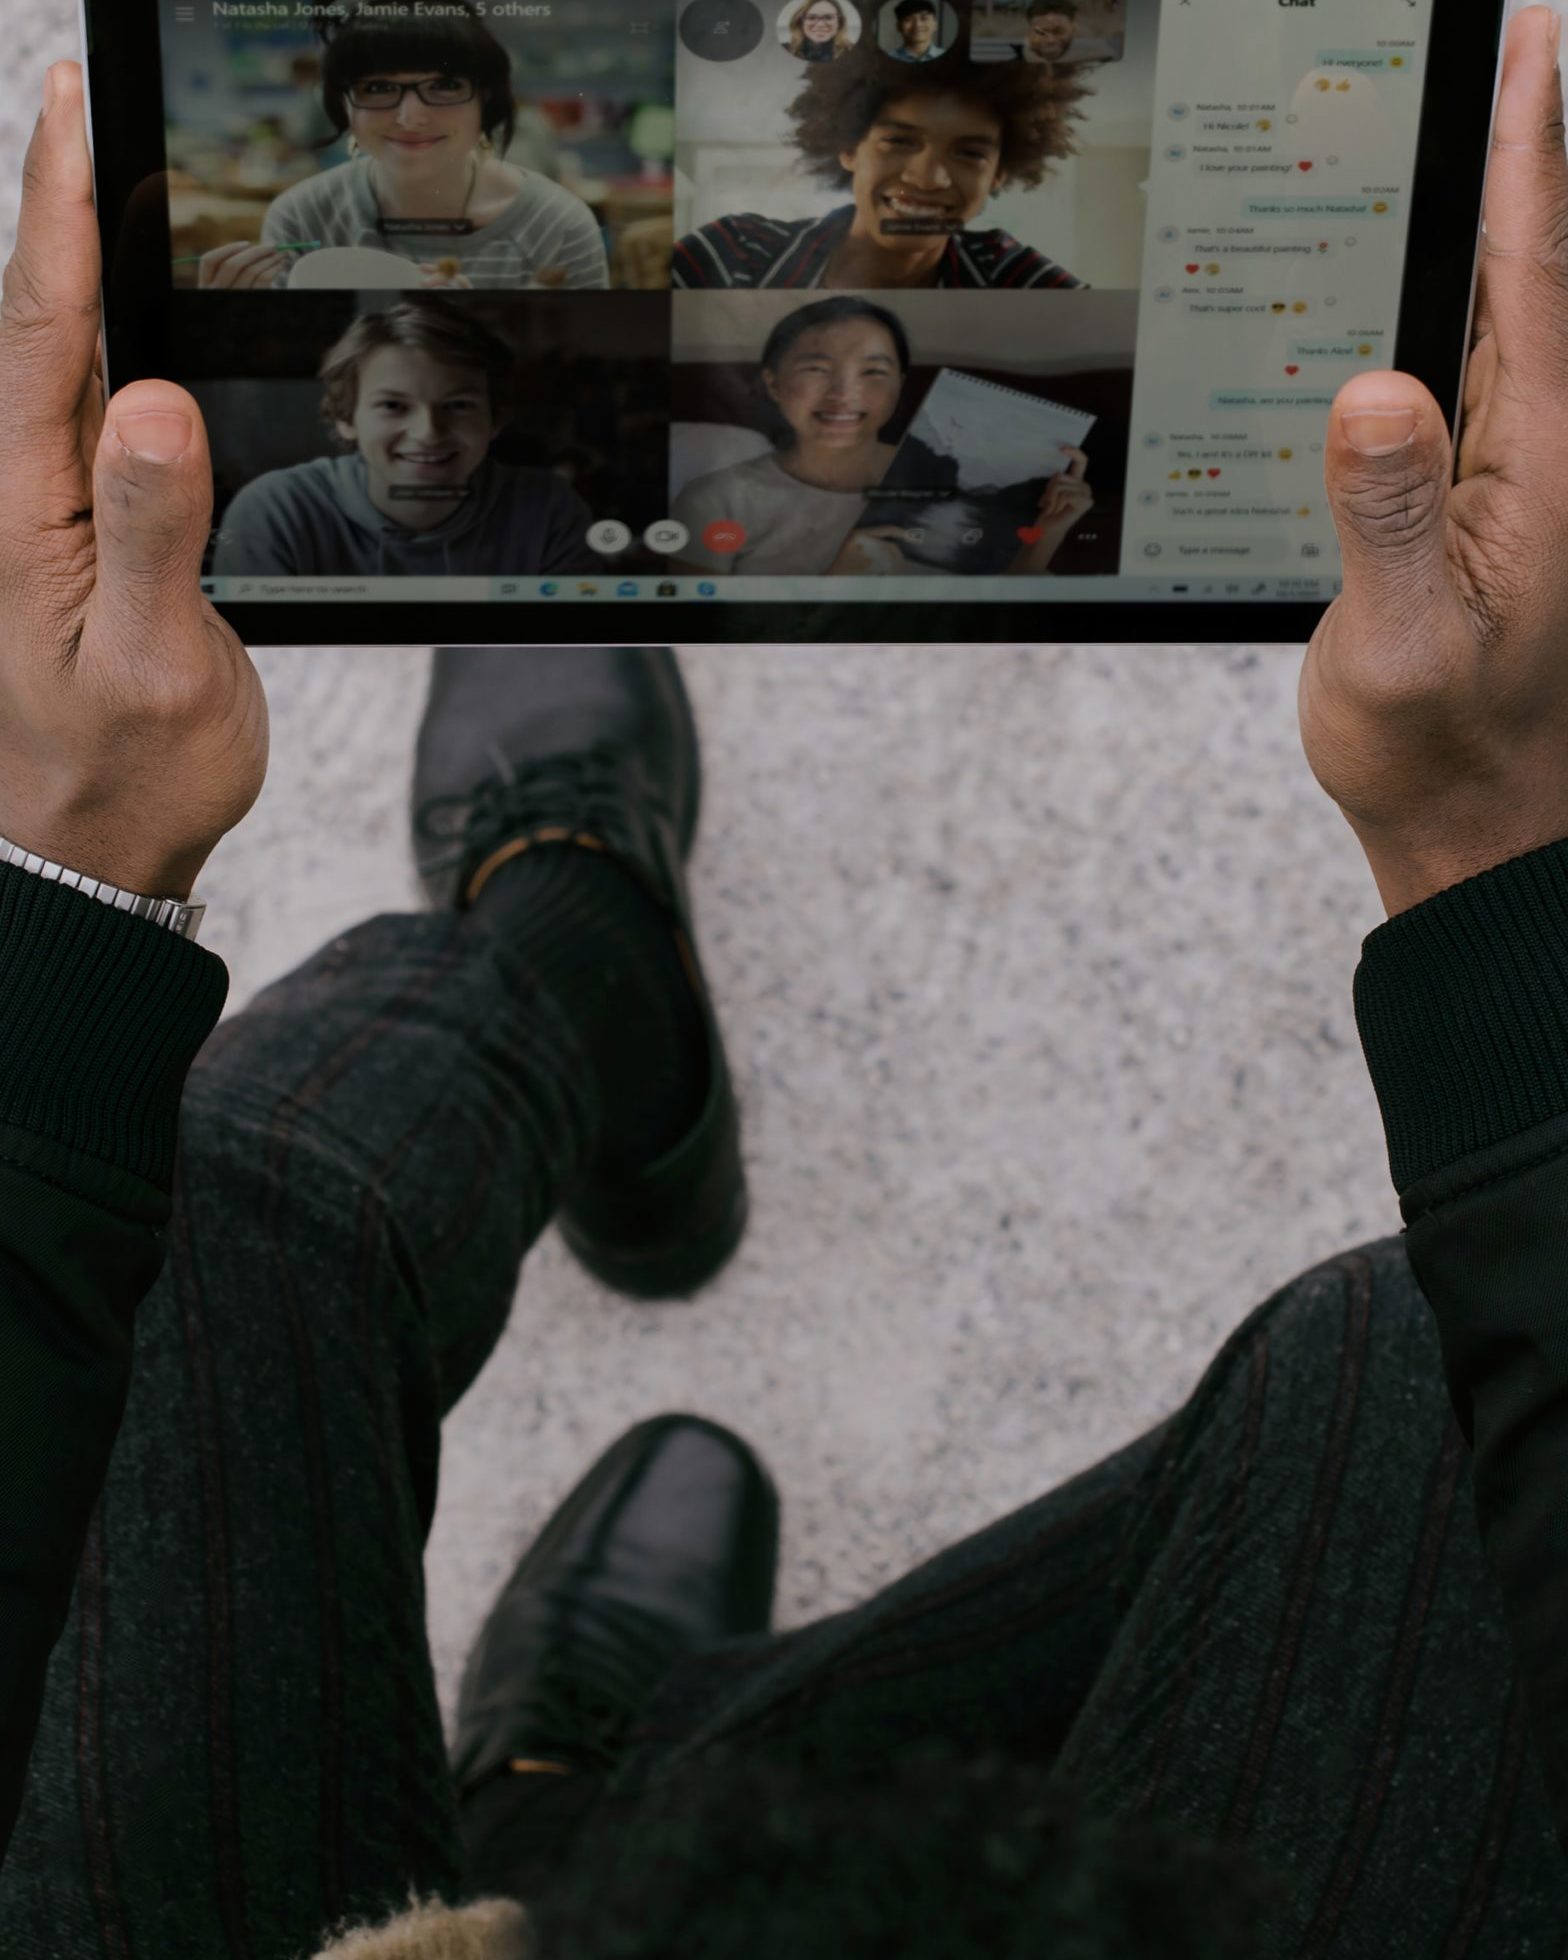 Human Virtuality: Mensch ist via Tablet mit anderen Teilnehmenden eines Videocalls verbunden